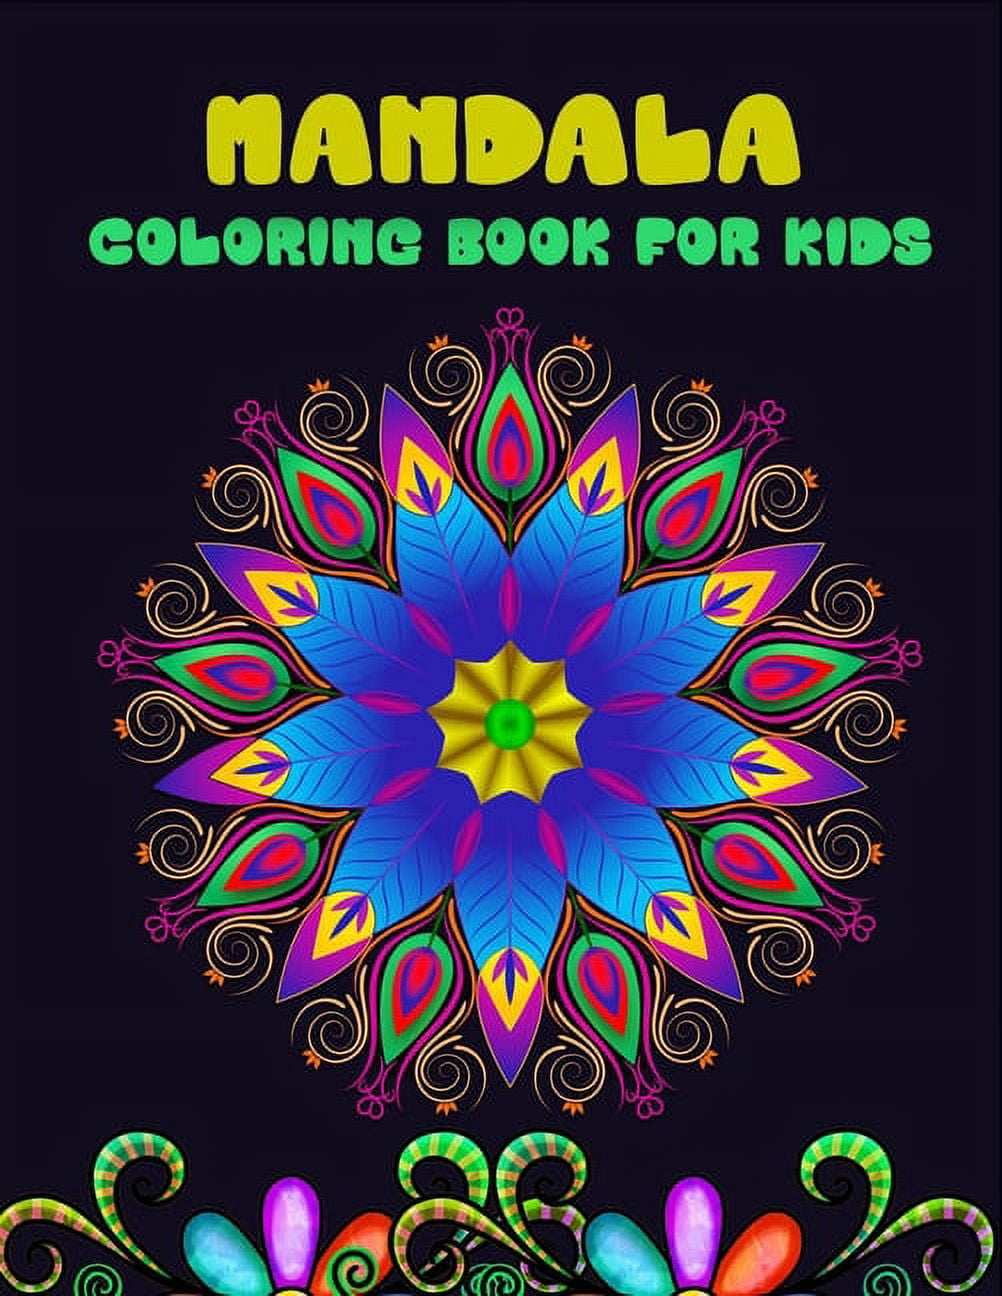 Mandala Coloring Book for Kids: Ages 6-8, 9-12, Fun, Easy Mandalas